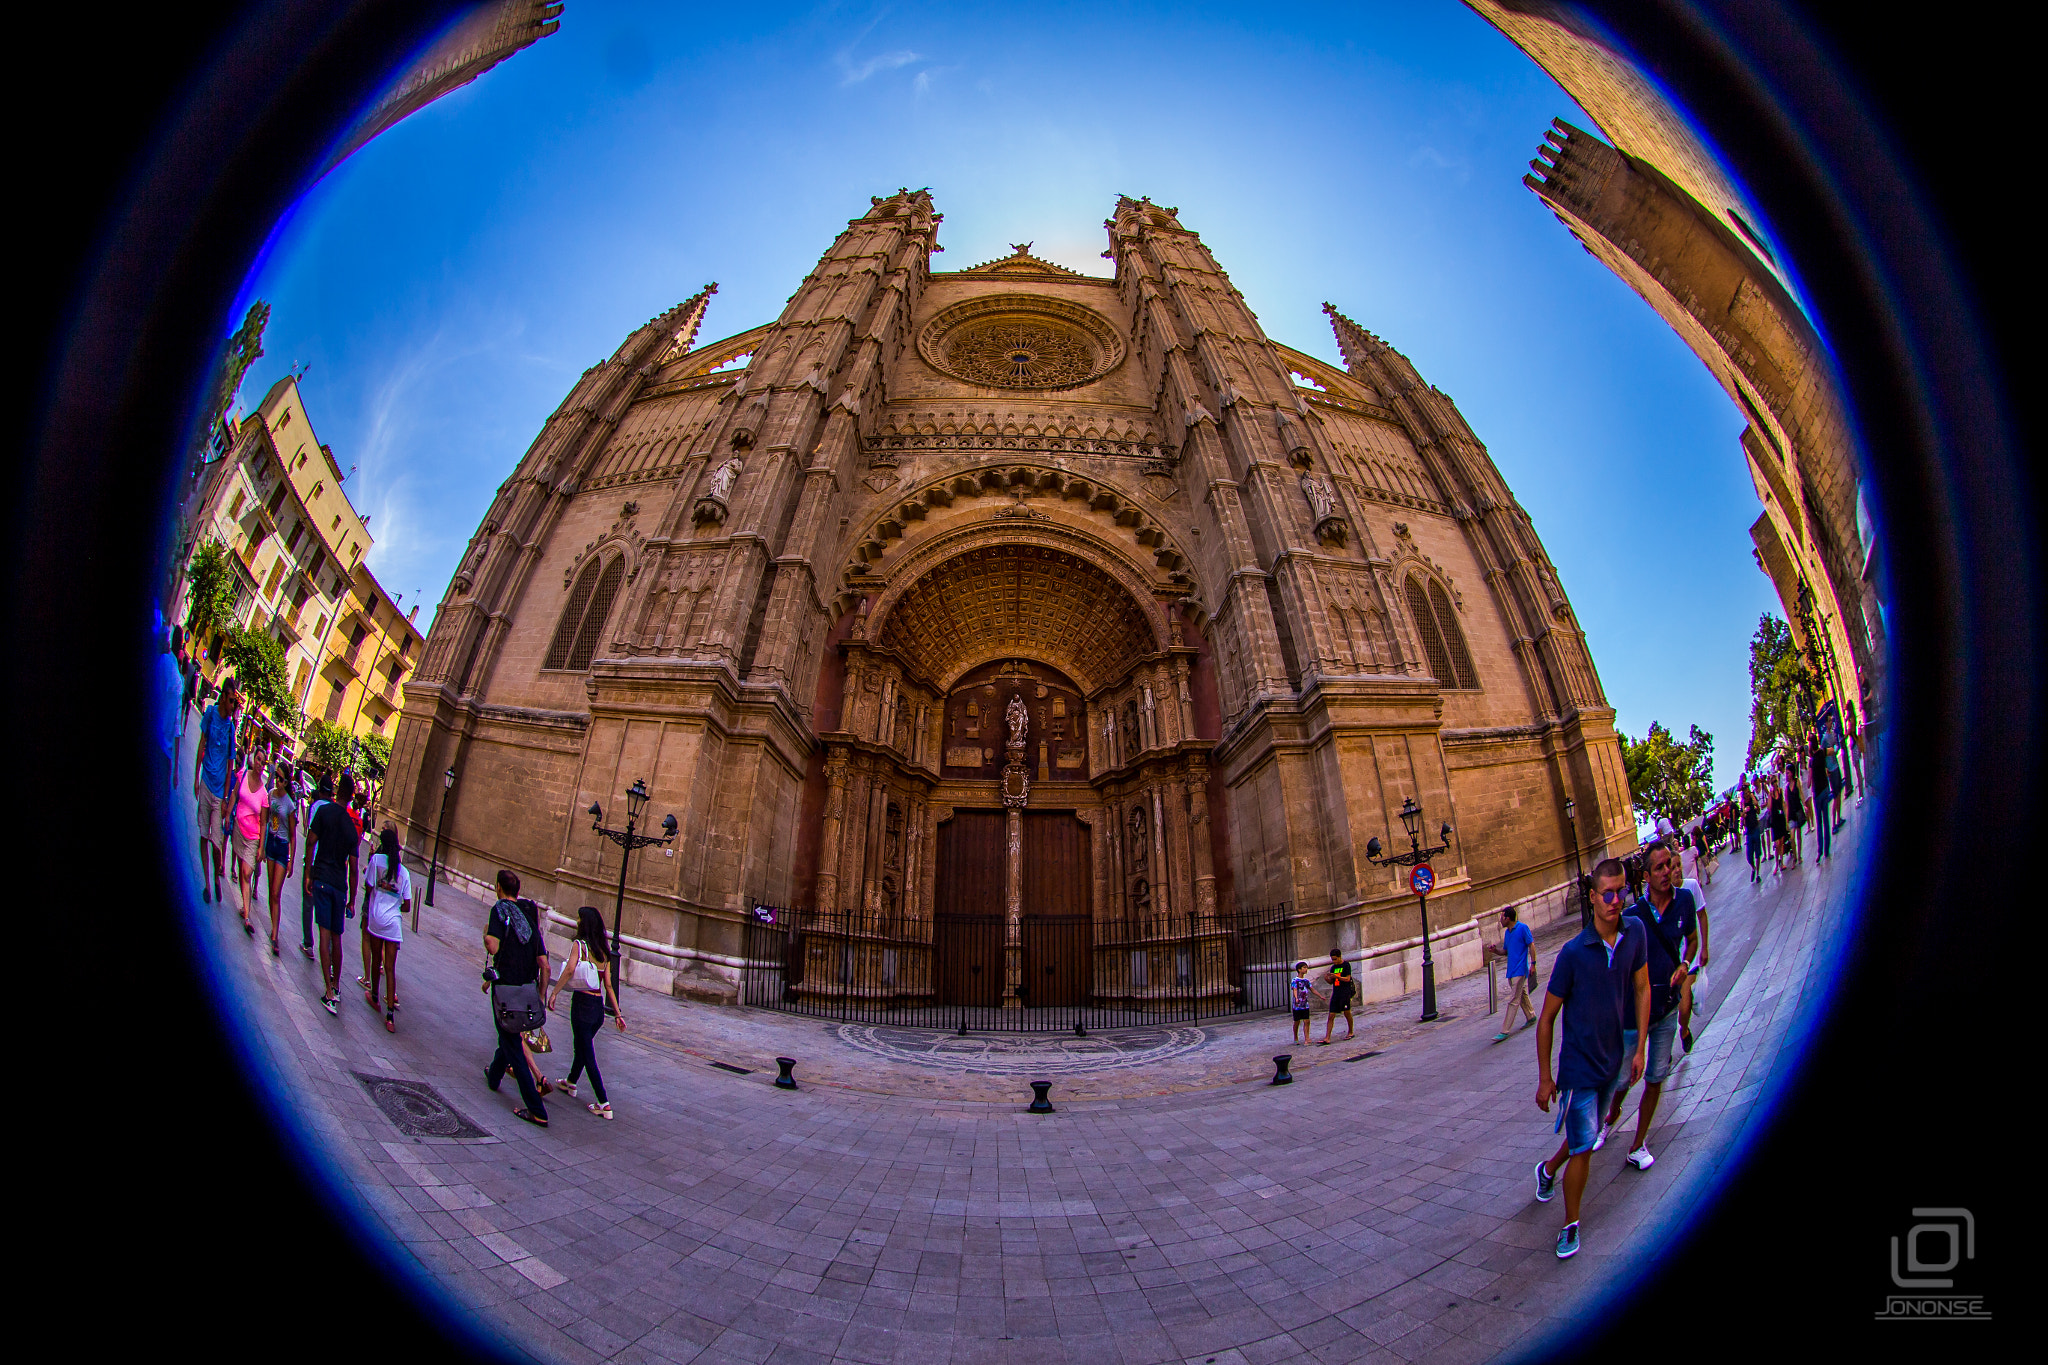 Canon EOS 6D sample photo. Main facade cathedral of la seu photography